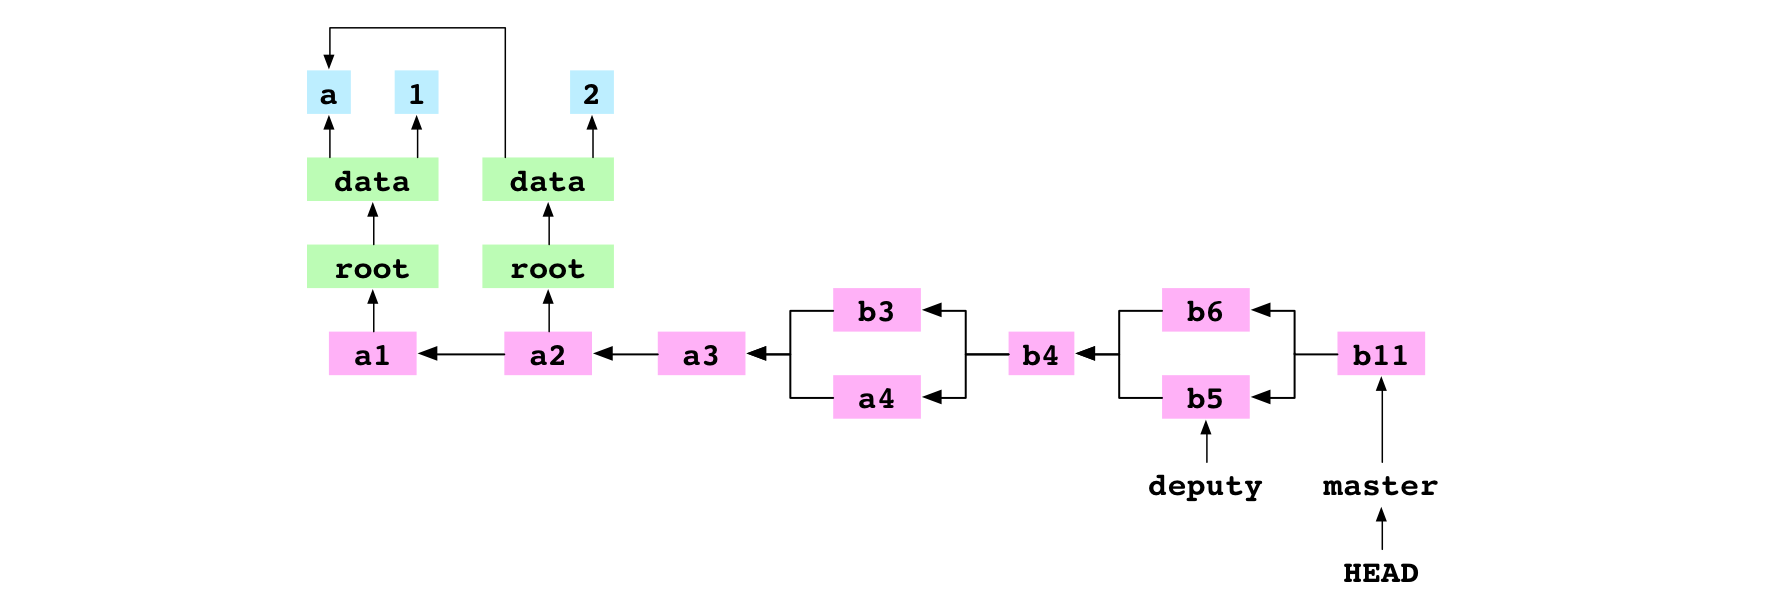 b11, le commit de fusion provenant de la fusion récursive conflictuelle entre b5 et b6